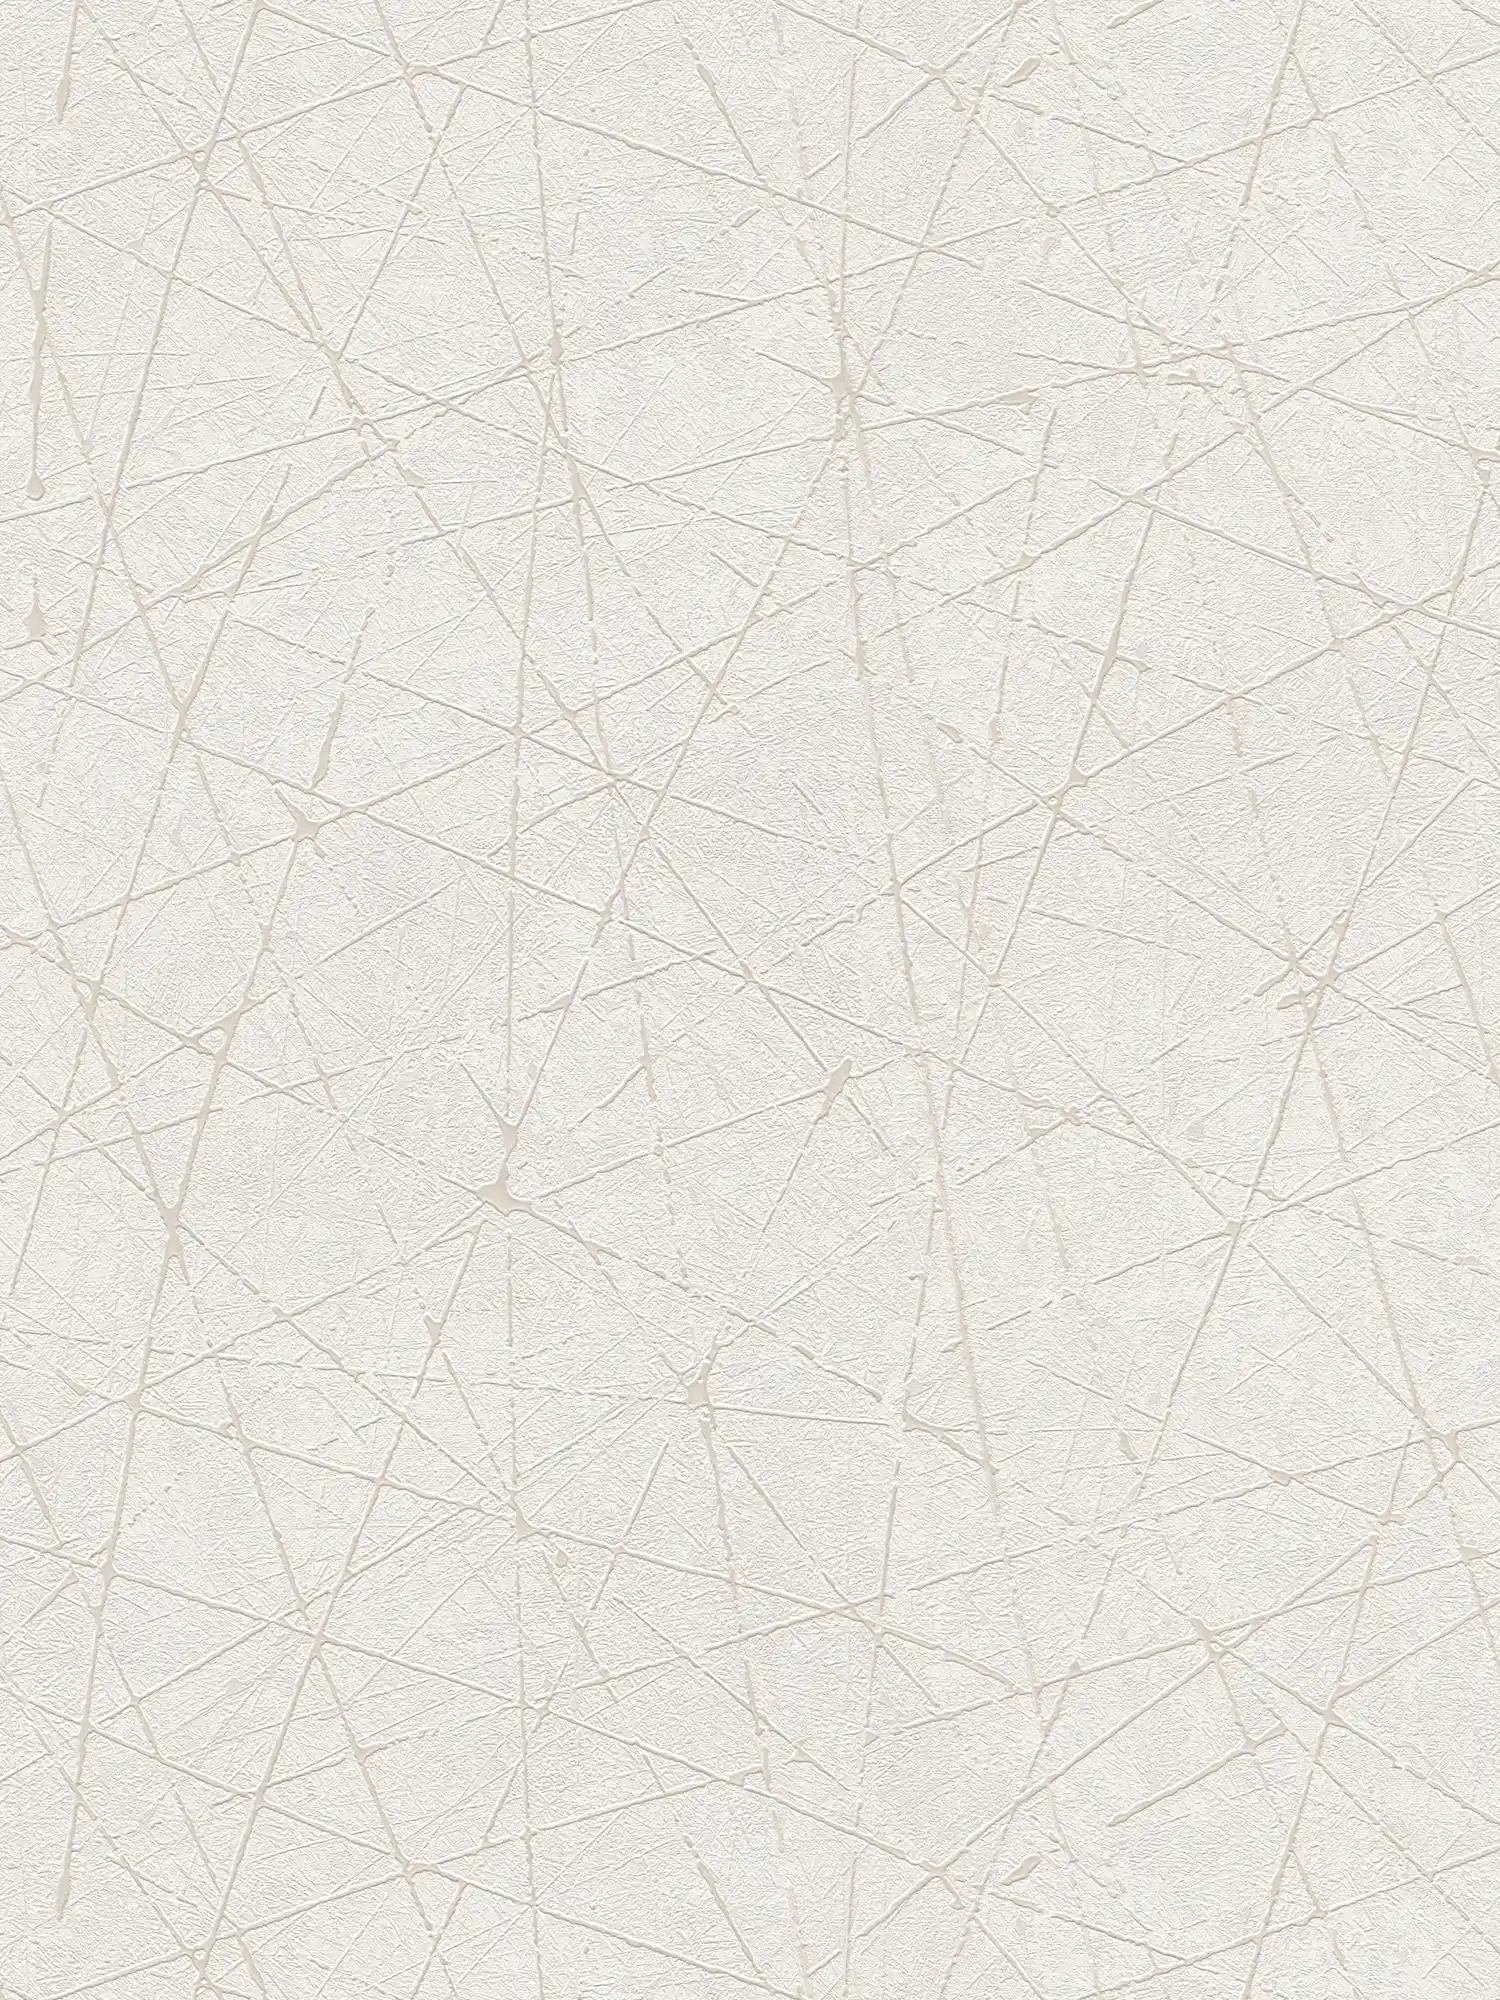         Non-woven wallpaper with graphic line pattern - white, cream, silver
    